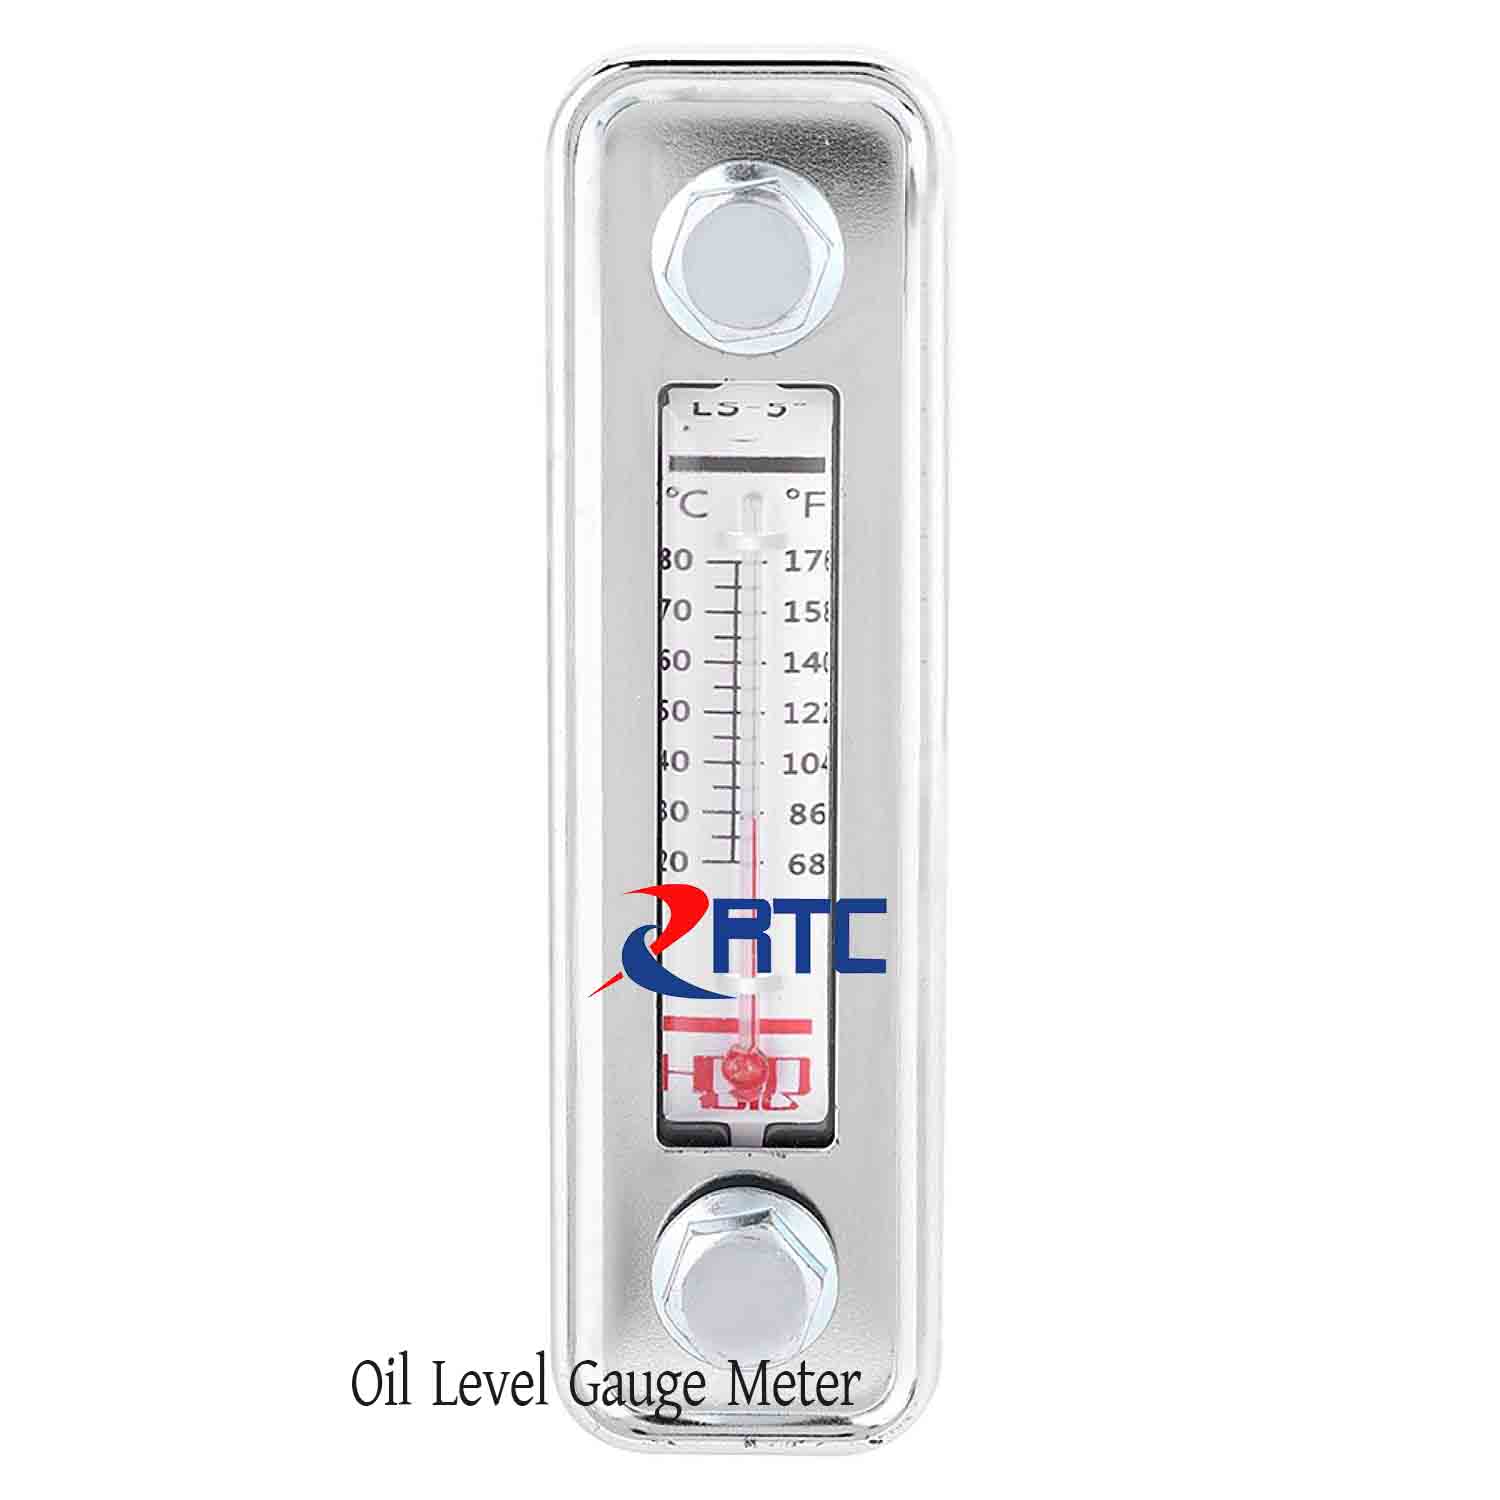 Oil Level Gauge Meter